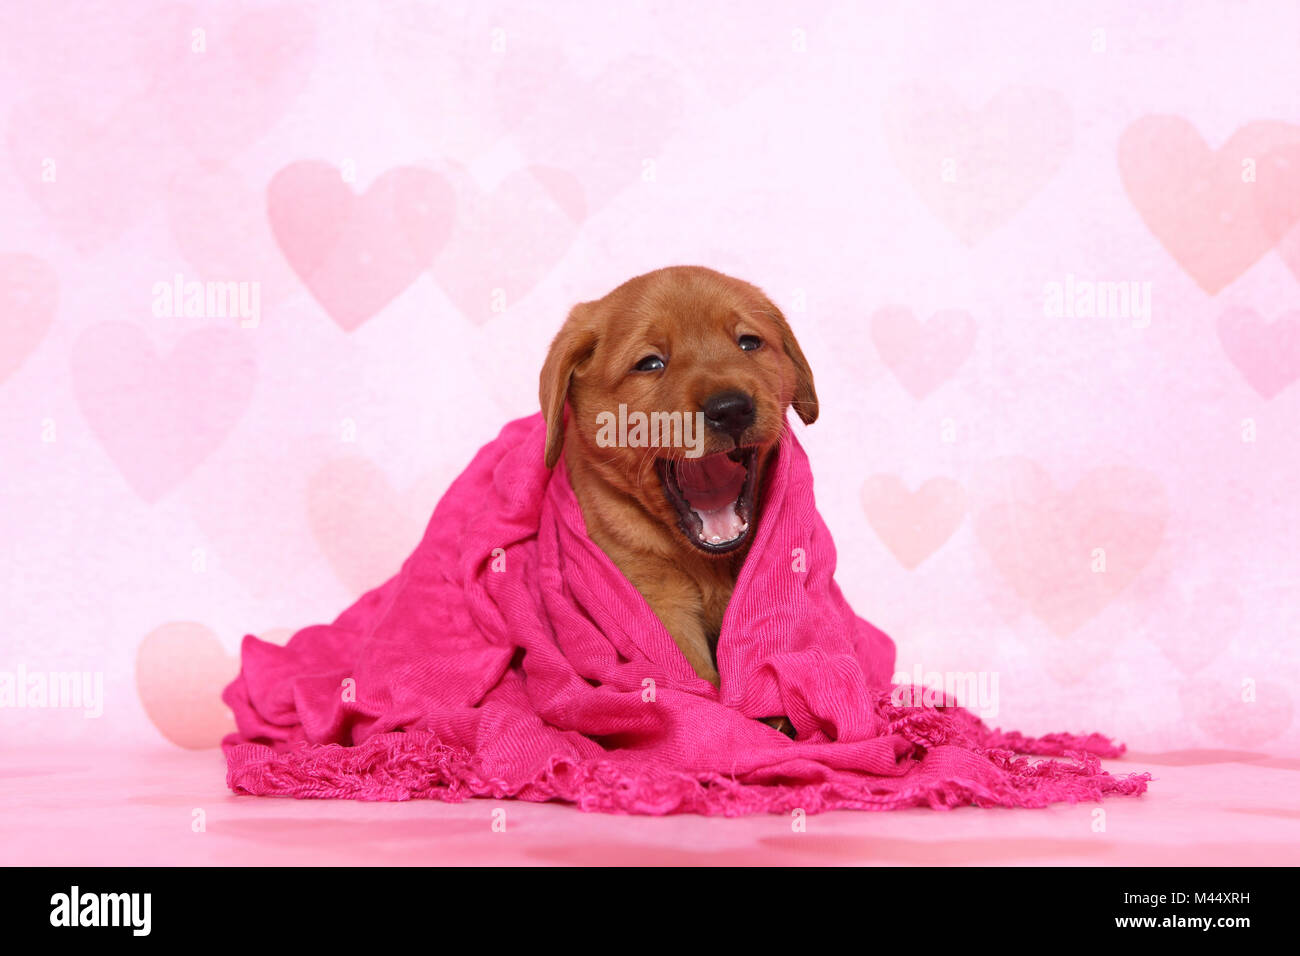 Il Labrador Retriever. Cucciolo (6 settimane di età) sbadigli, seduti in un blanket di rosa. Studio Immagine visto contro un sfondo rosa con cuore stampa. Germania Foto Stock